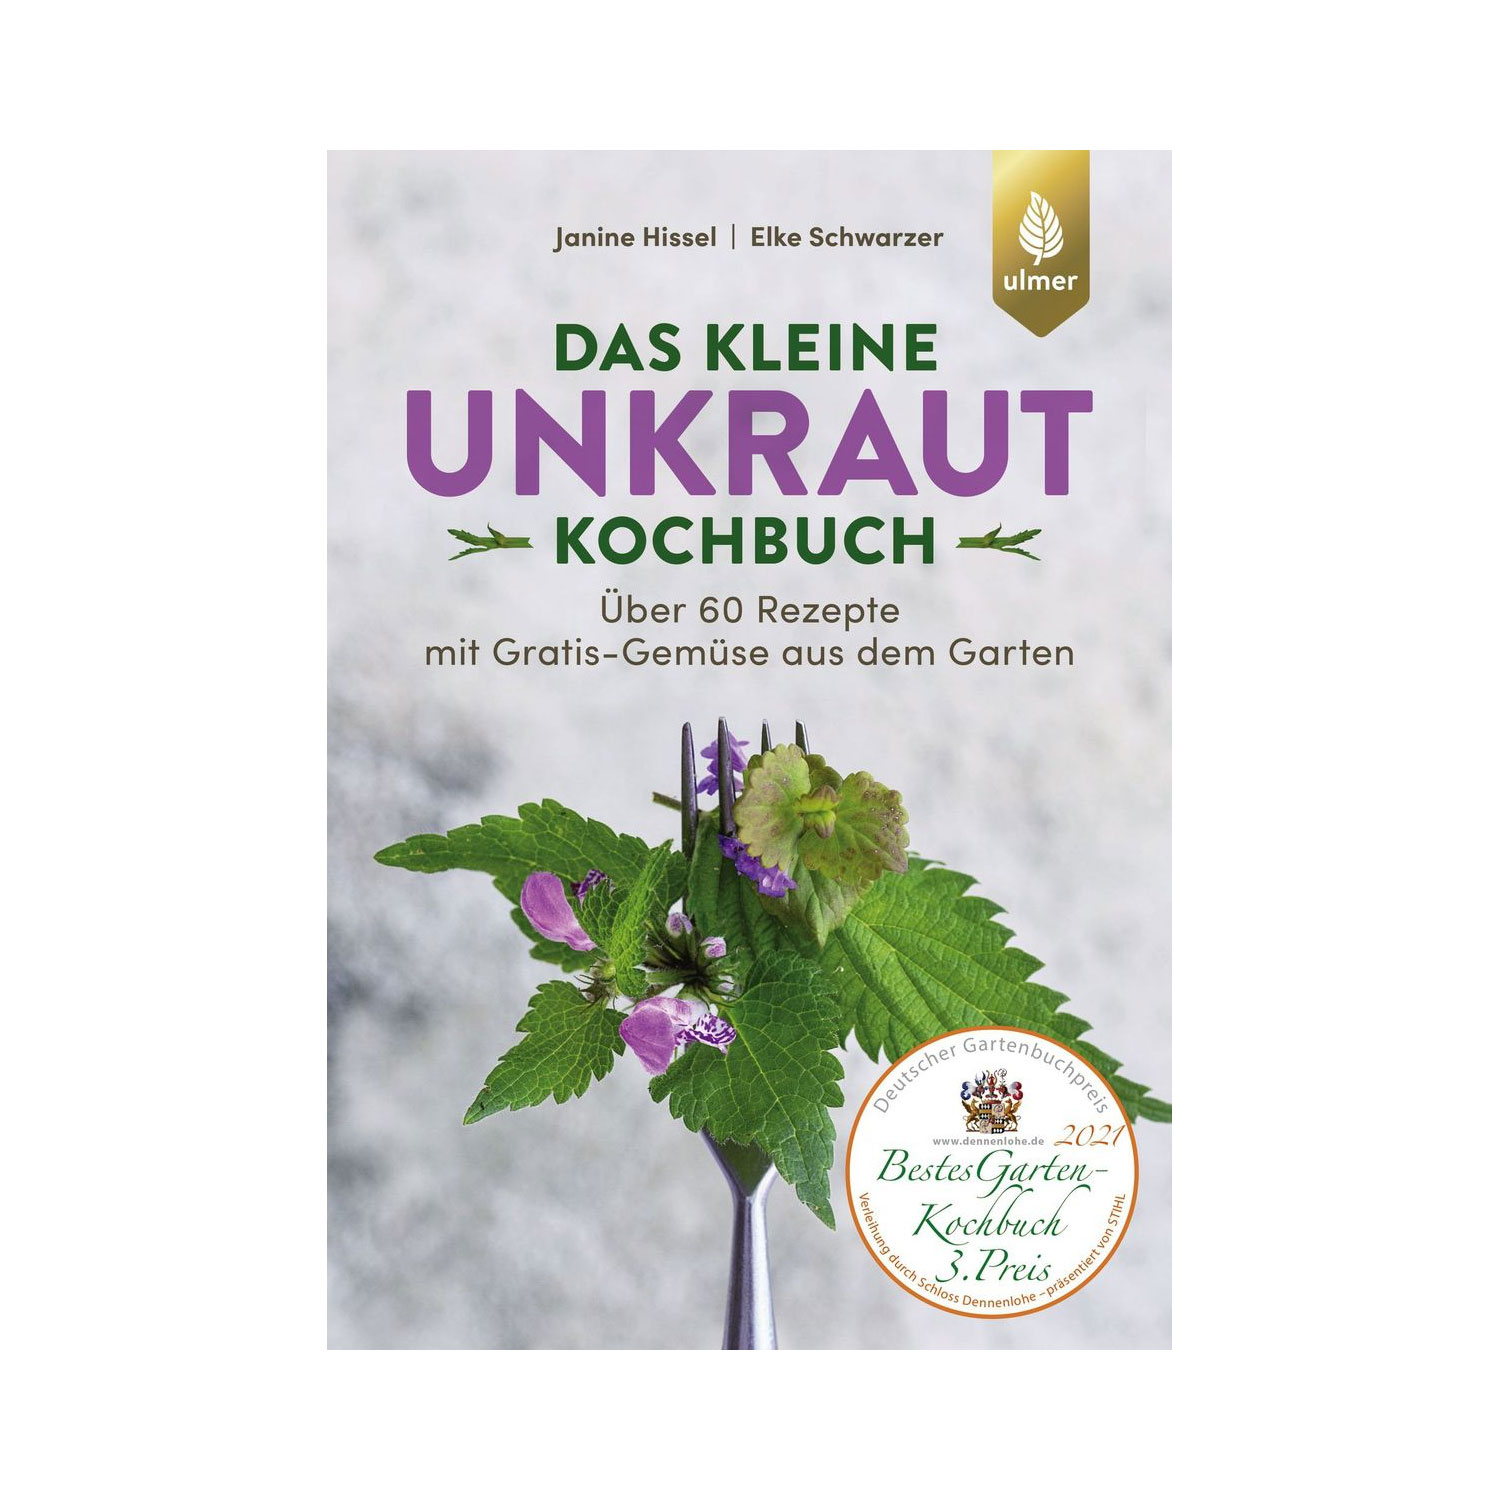 Unkraut Kochbuch vom Ulmer Verag: Kochen mit vermeintlichen Unkräutern und Wildkräutern - Zero Waste Küche